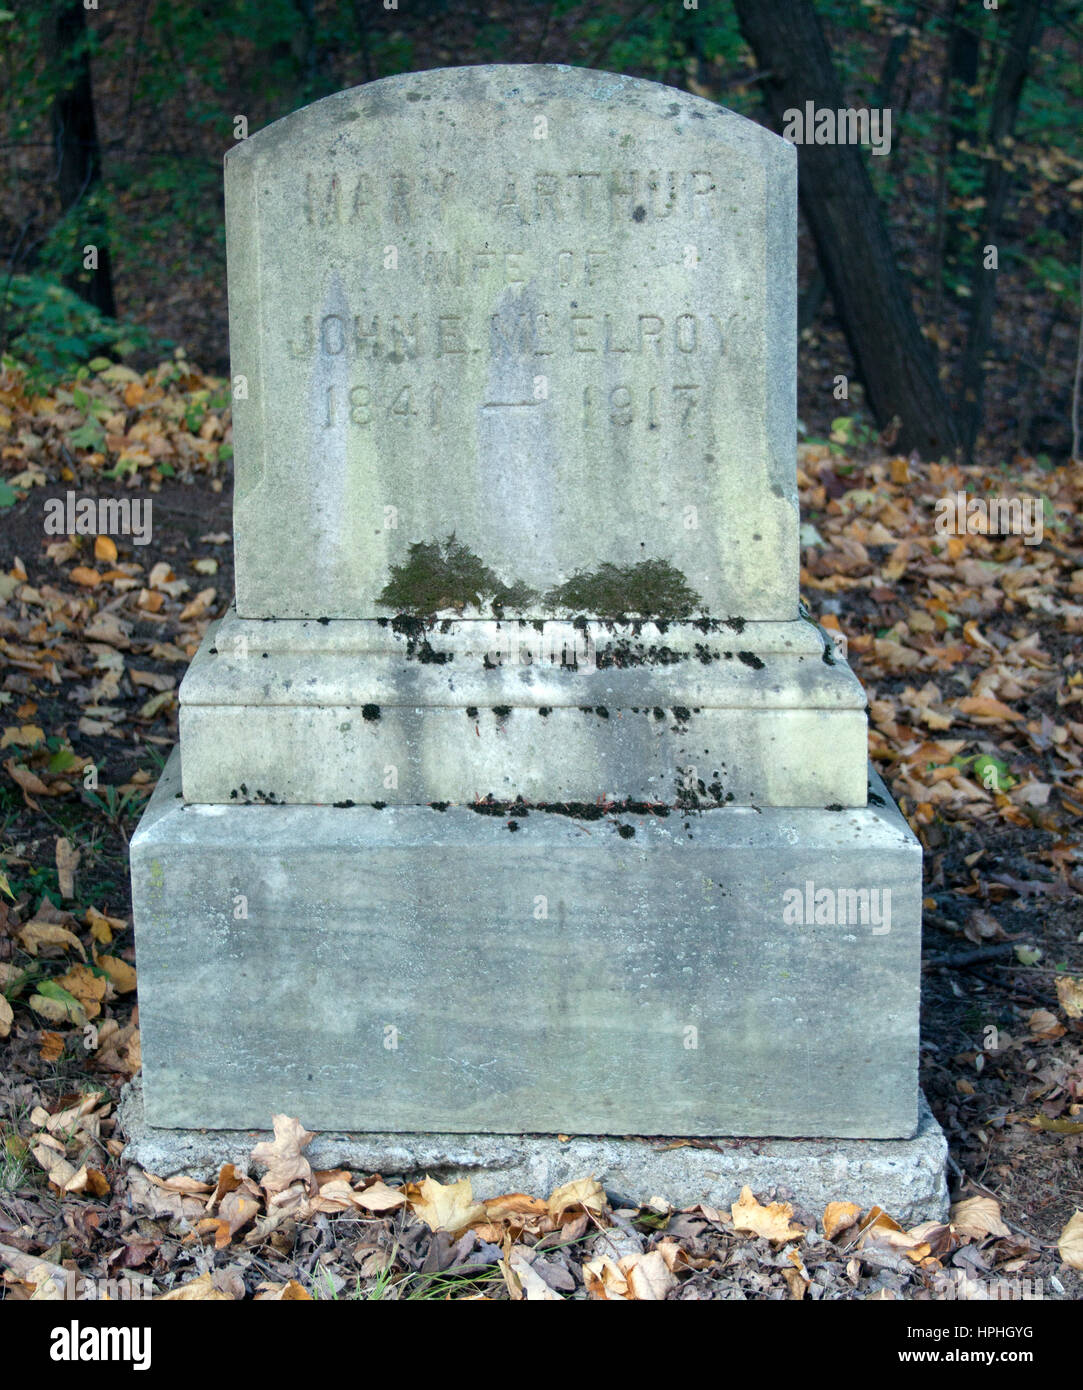 Mary Arthurs grave dans Albany New York. Elle était la soeur du Président Arthur et a servi en tant que première dame lorsque sa femme est morte. Banque D'Images